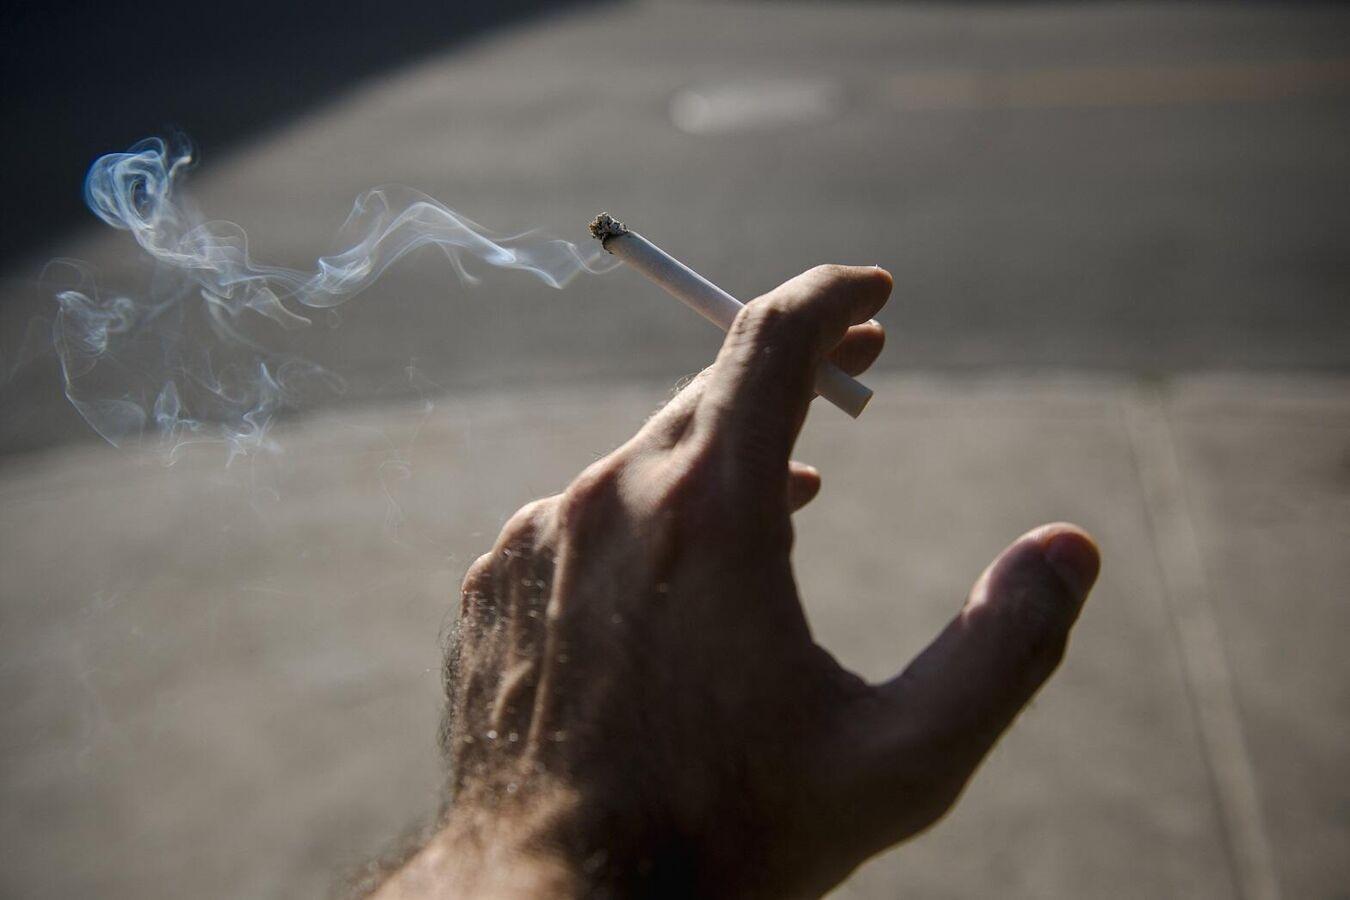 دراسة: التدخين قد يزيد من خطر الإصابة بالاكتئاب والاضطراب ثنائي القطب